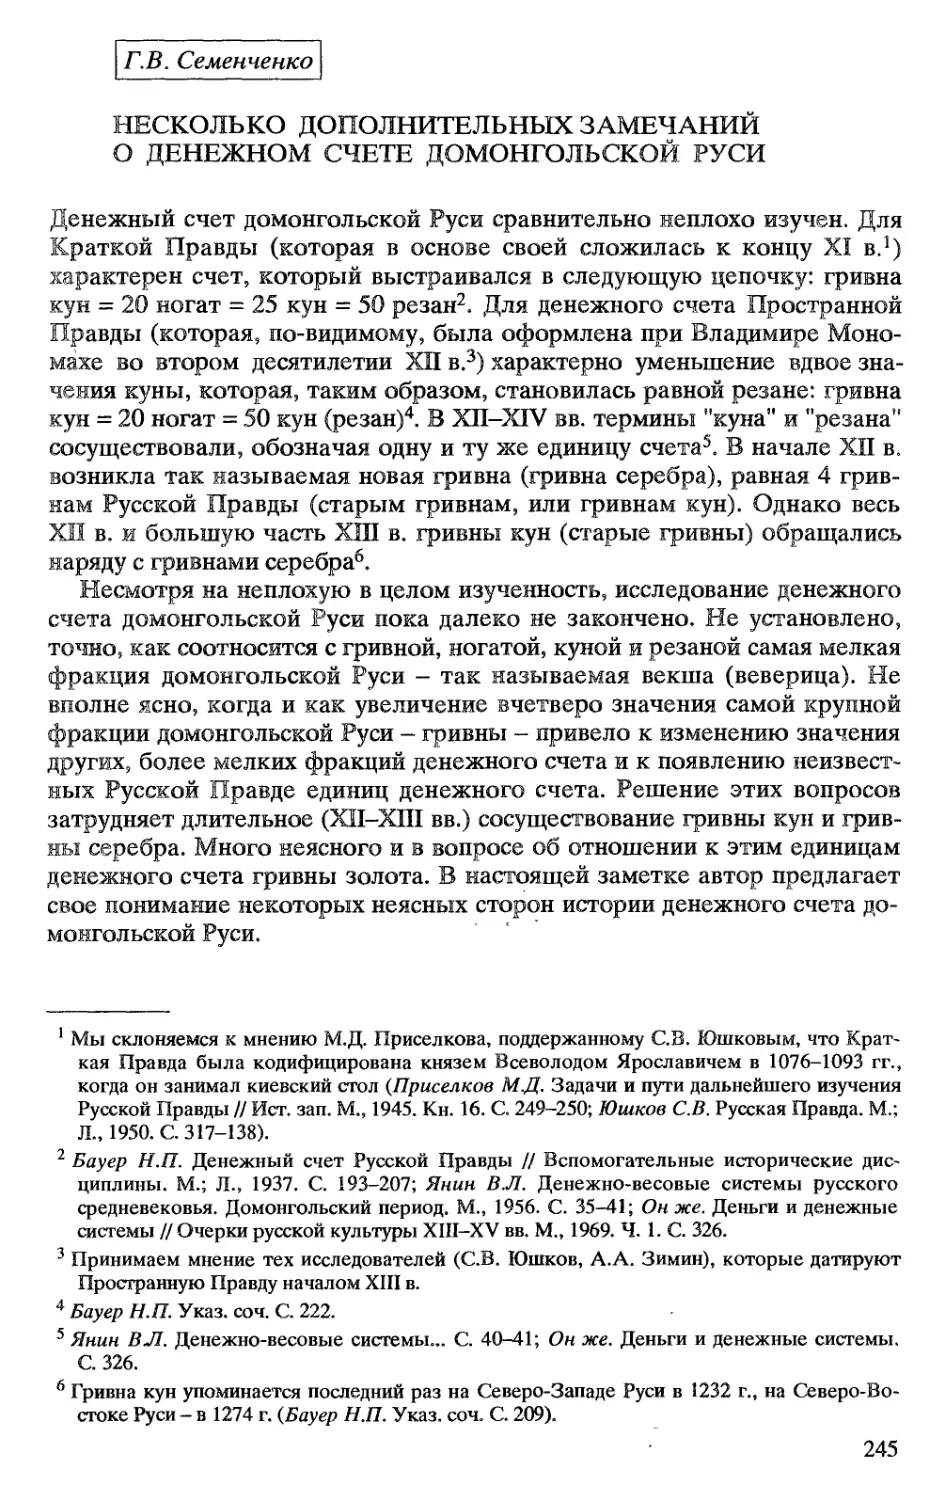 Г.В. Семенченко. Несколько дополнительных замечаний о денежном счете домонгольской Руси